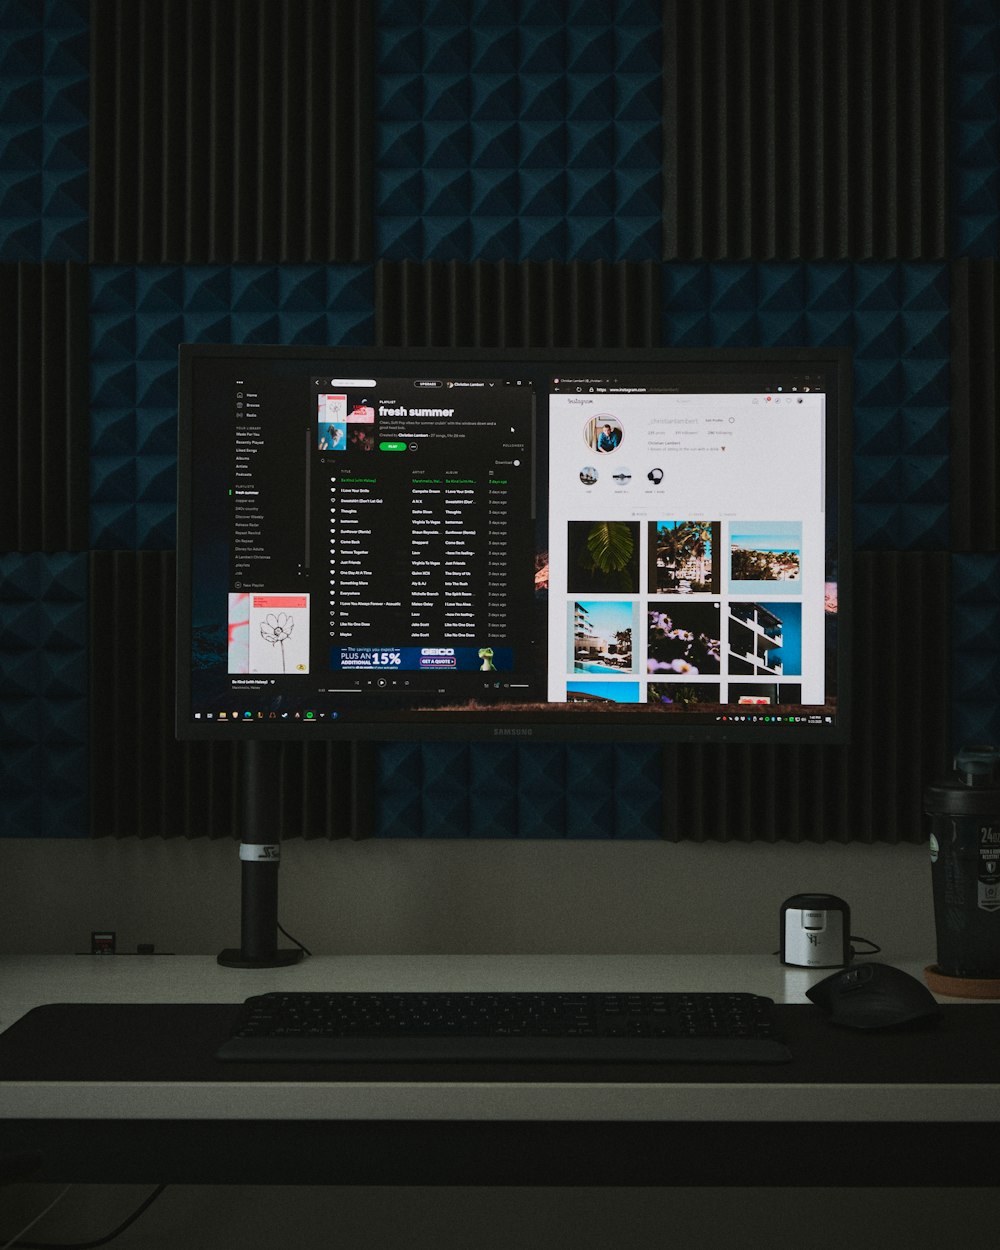 monitor de computador de tela plana preta